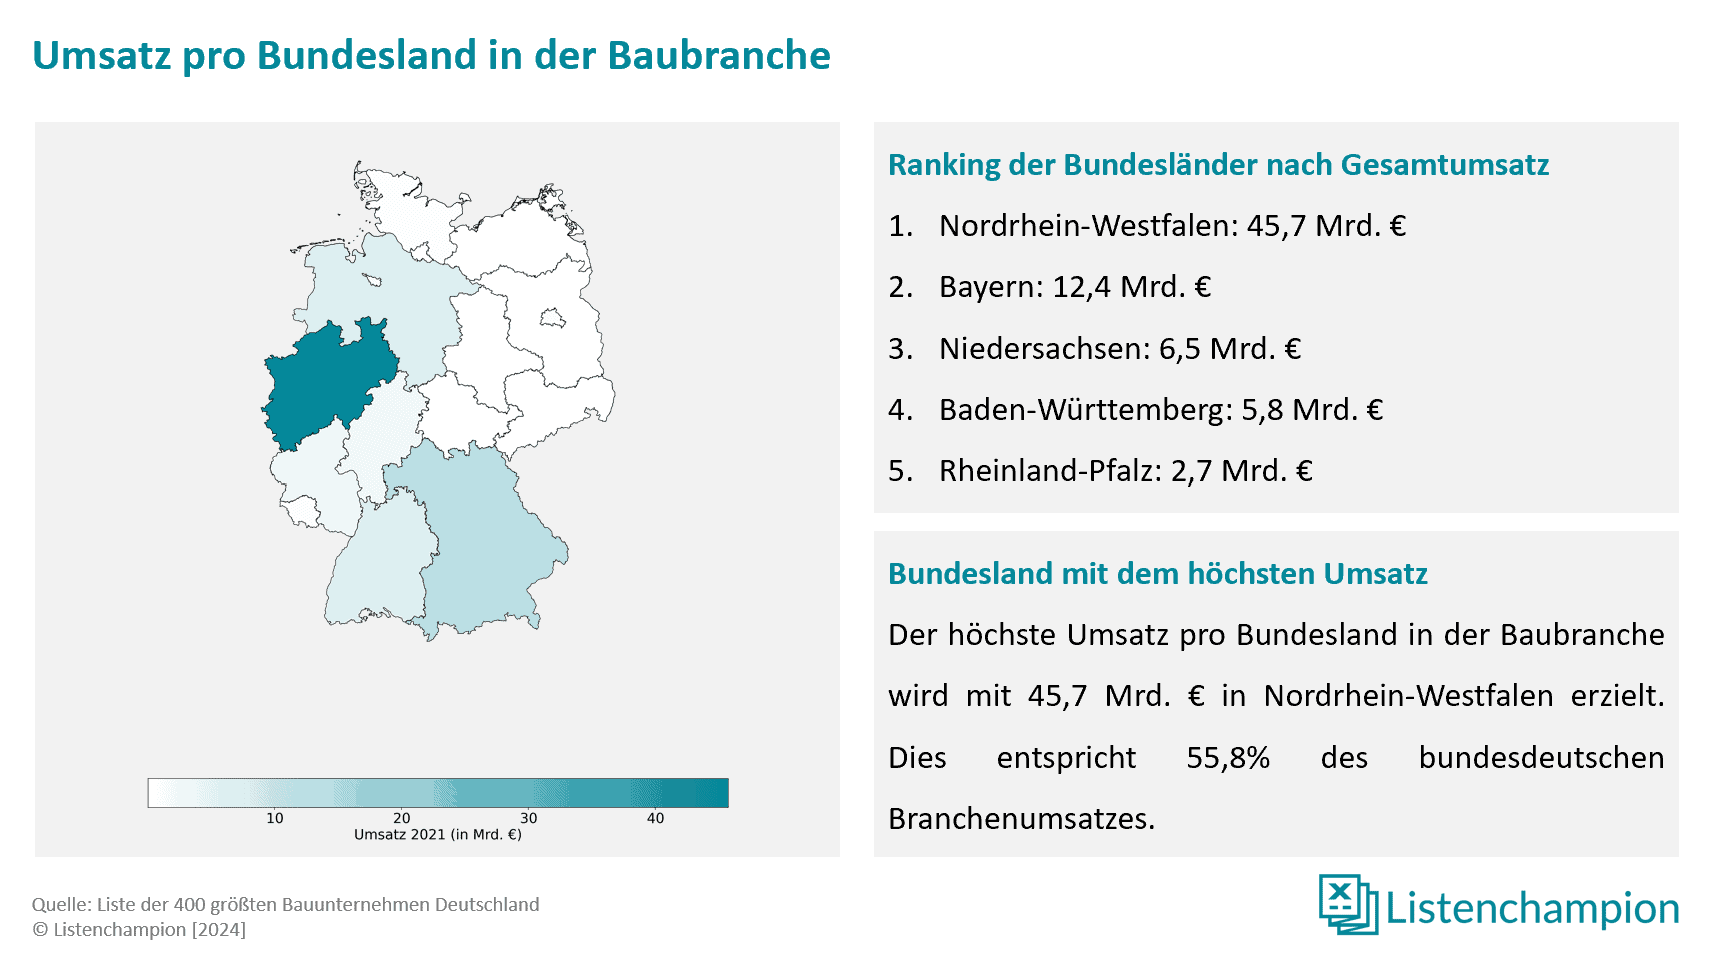 regionale verteilung der deutschen Baubranche